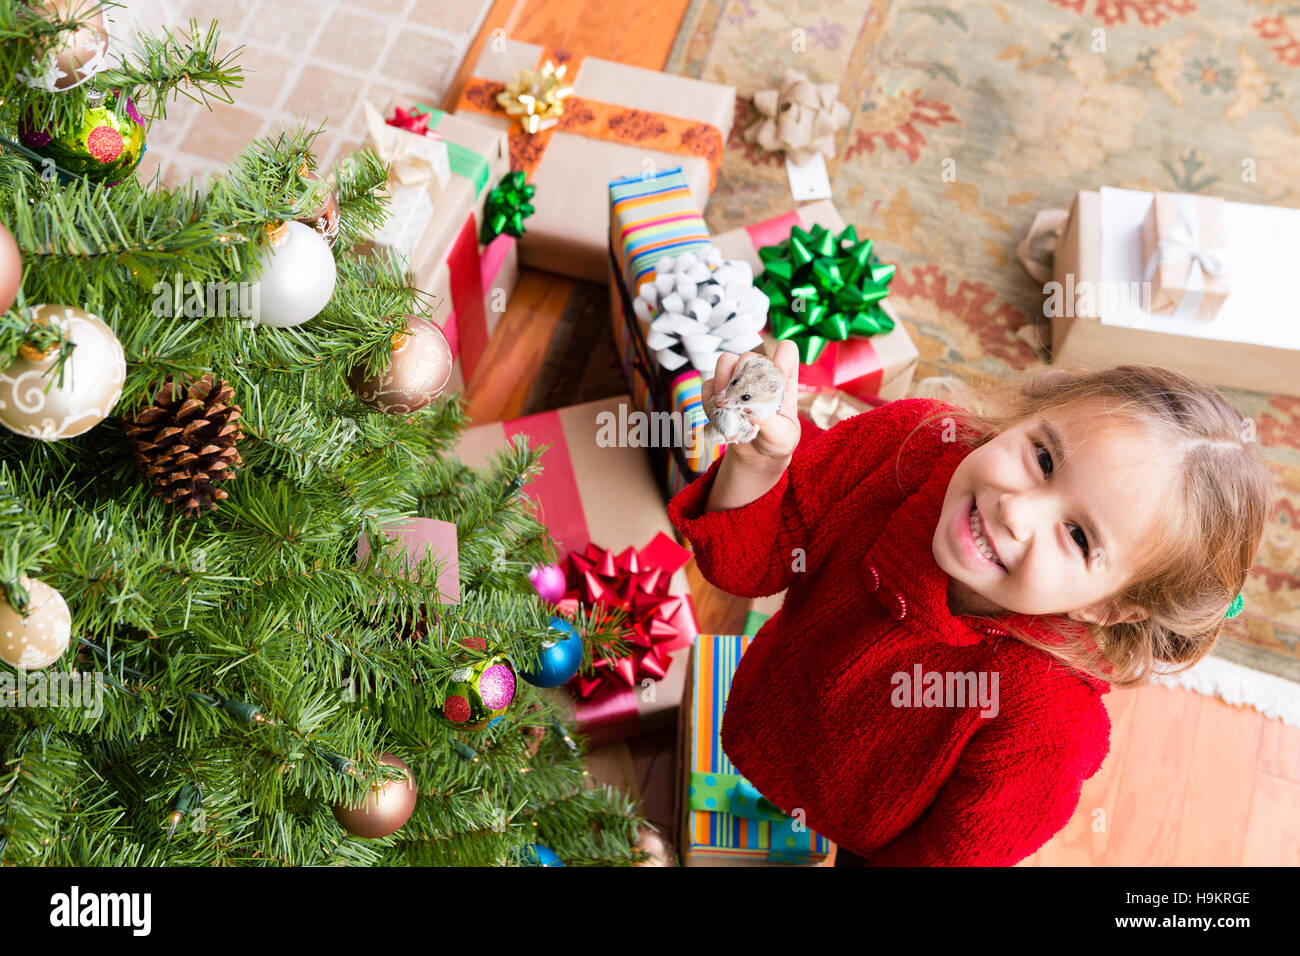 Heureux fier petite fille exhibant son cadeau de Noël de hamster avec un sourire rayonnant de plaisir alors qu'elle se tient au pied d'un tre Noël Décoration Banque D'Images